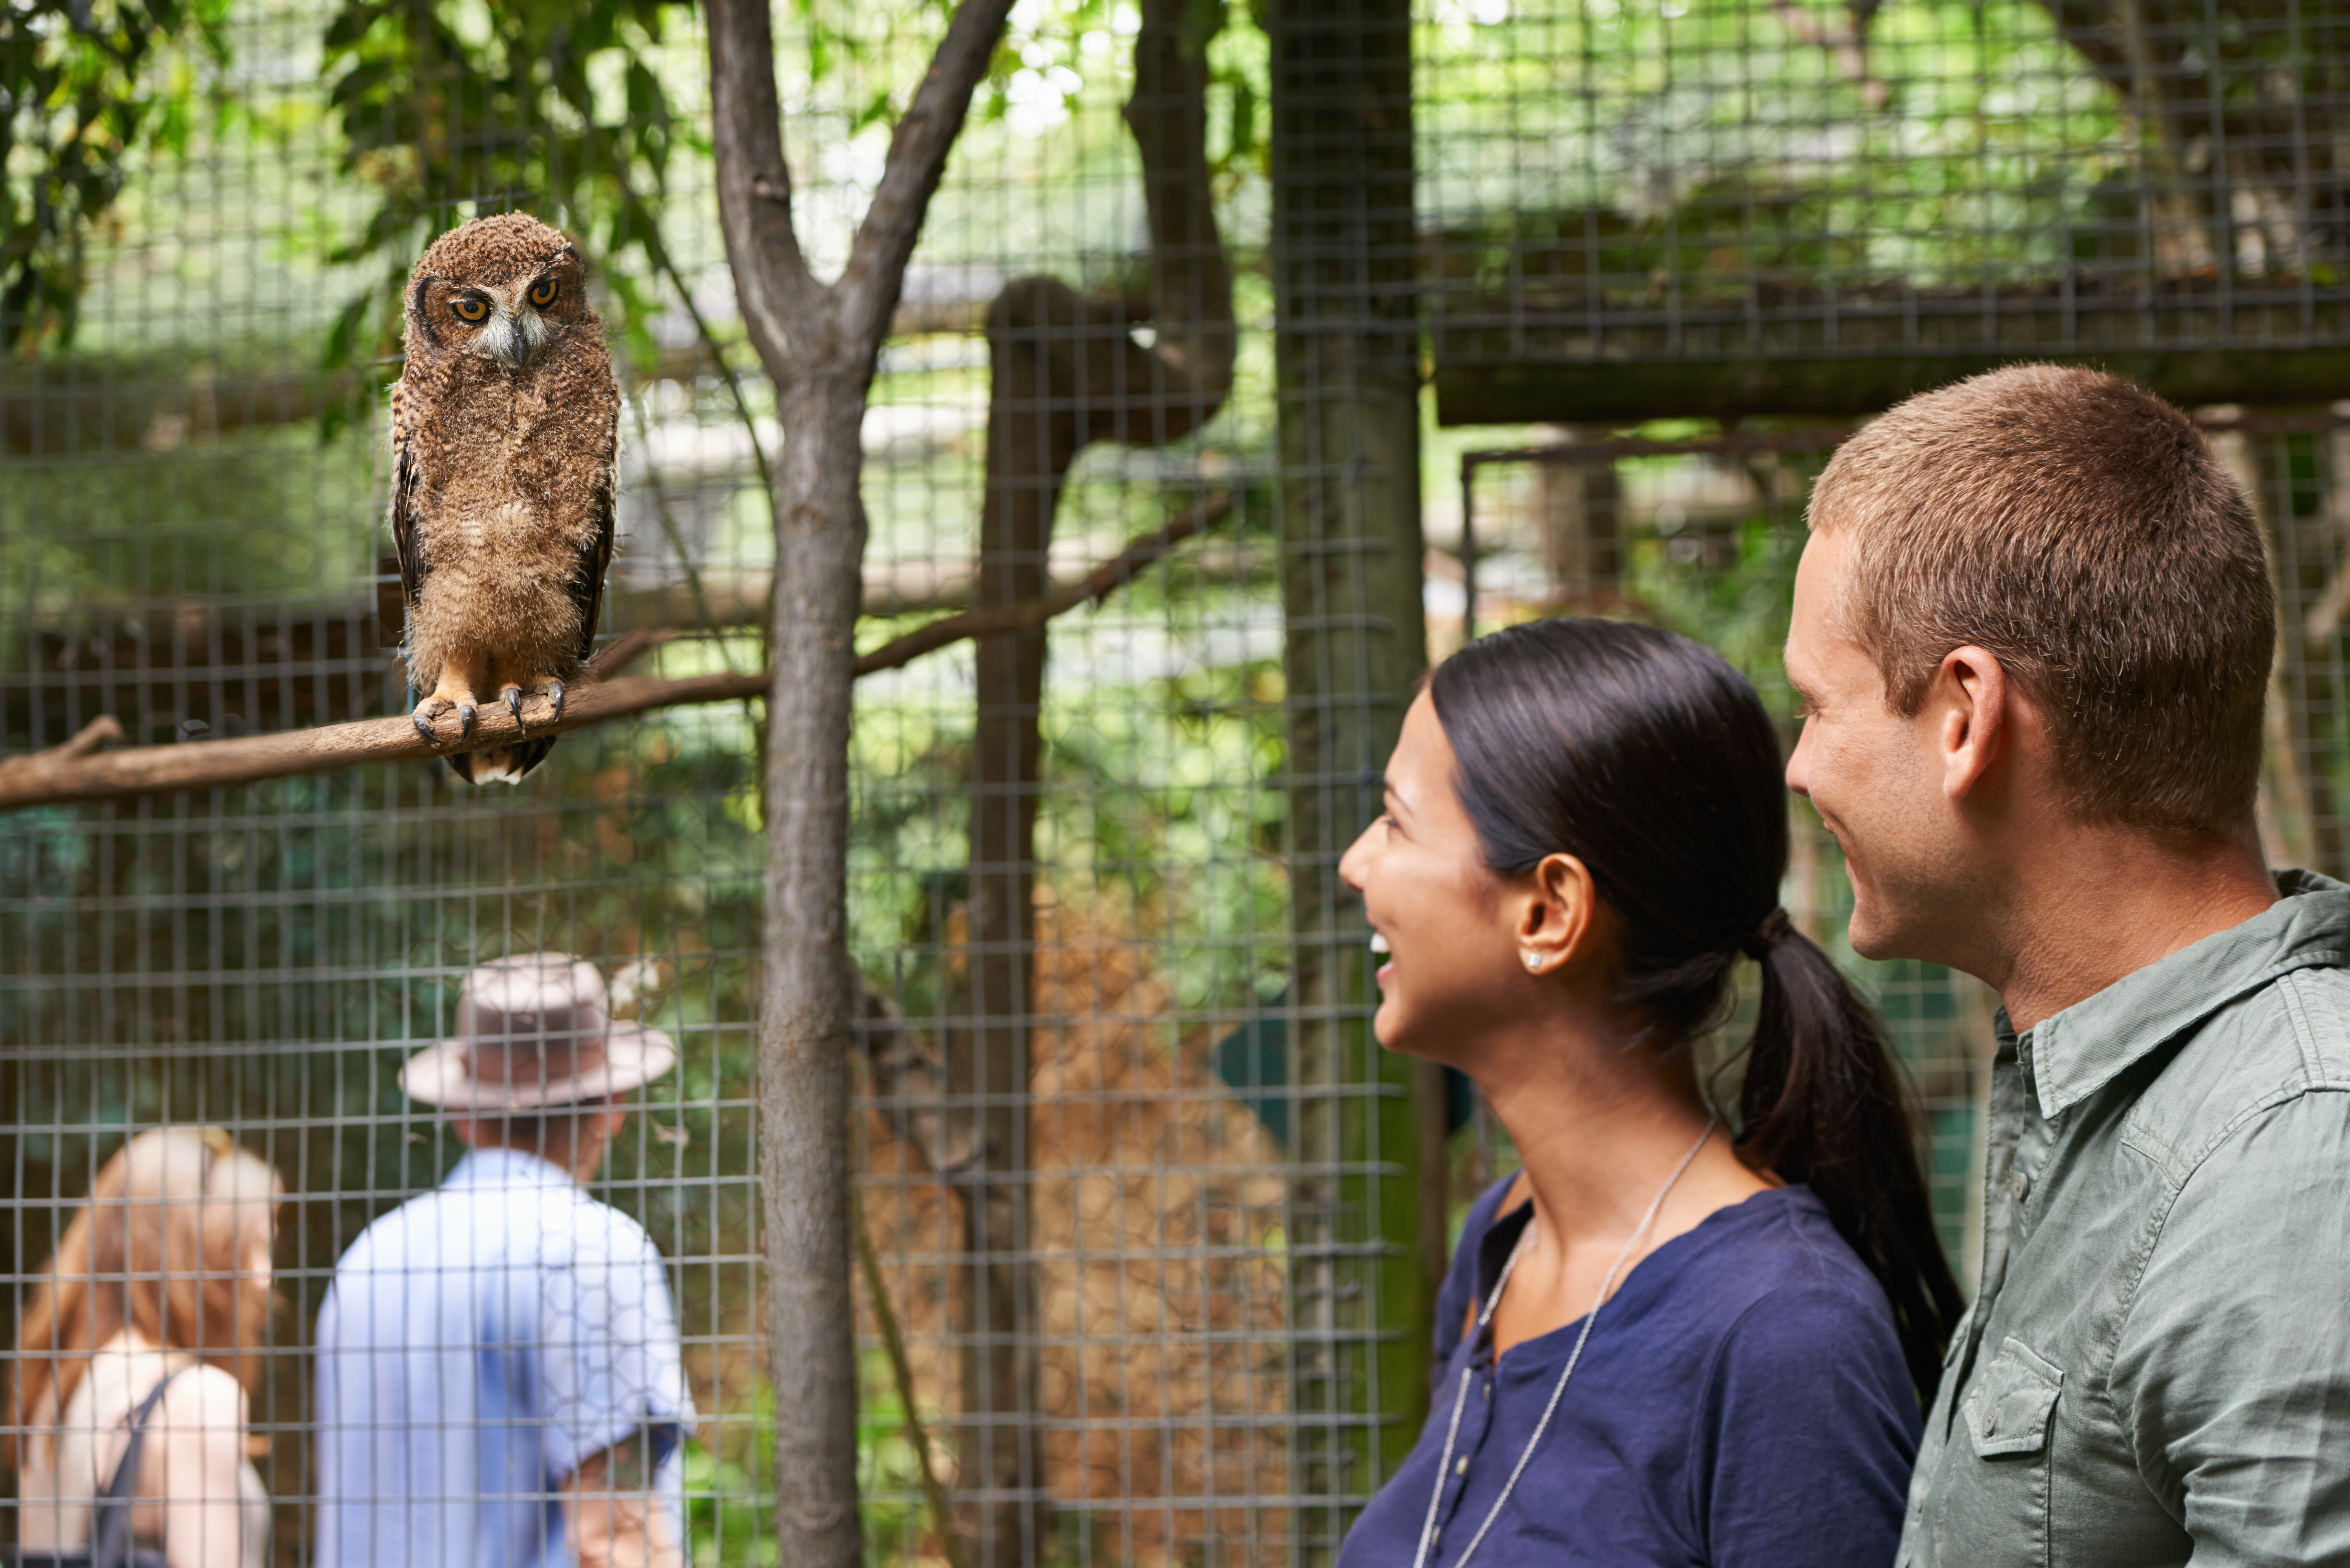 Junges Paar bei einem Date in einem Zoo | Quelle: Getty Images